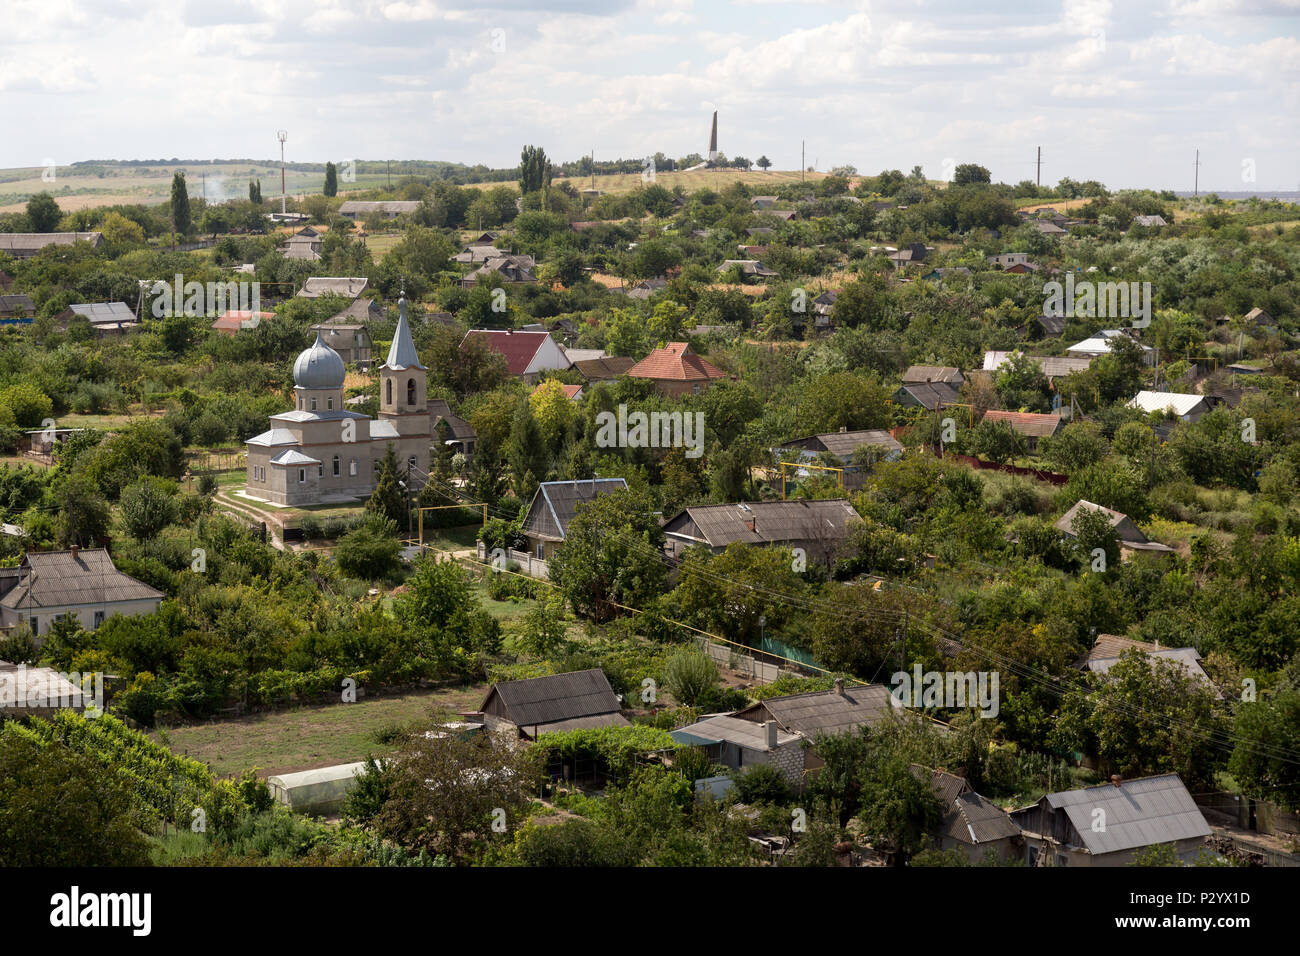 Chitcani, Moldova, view over Chitcani Stock Photo